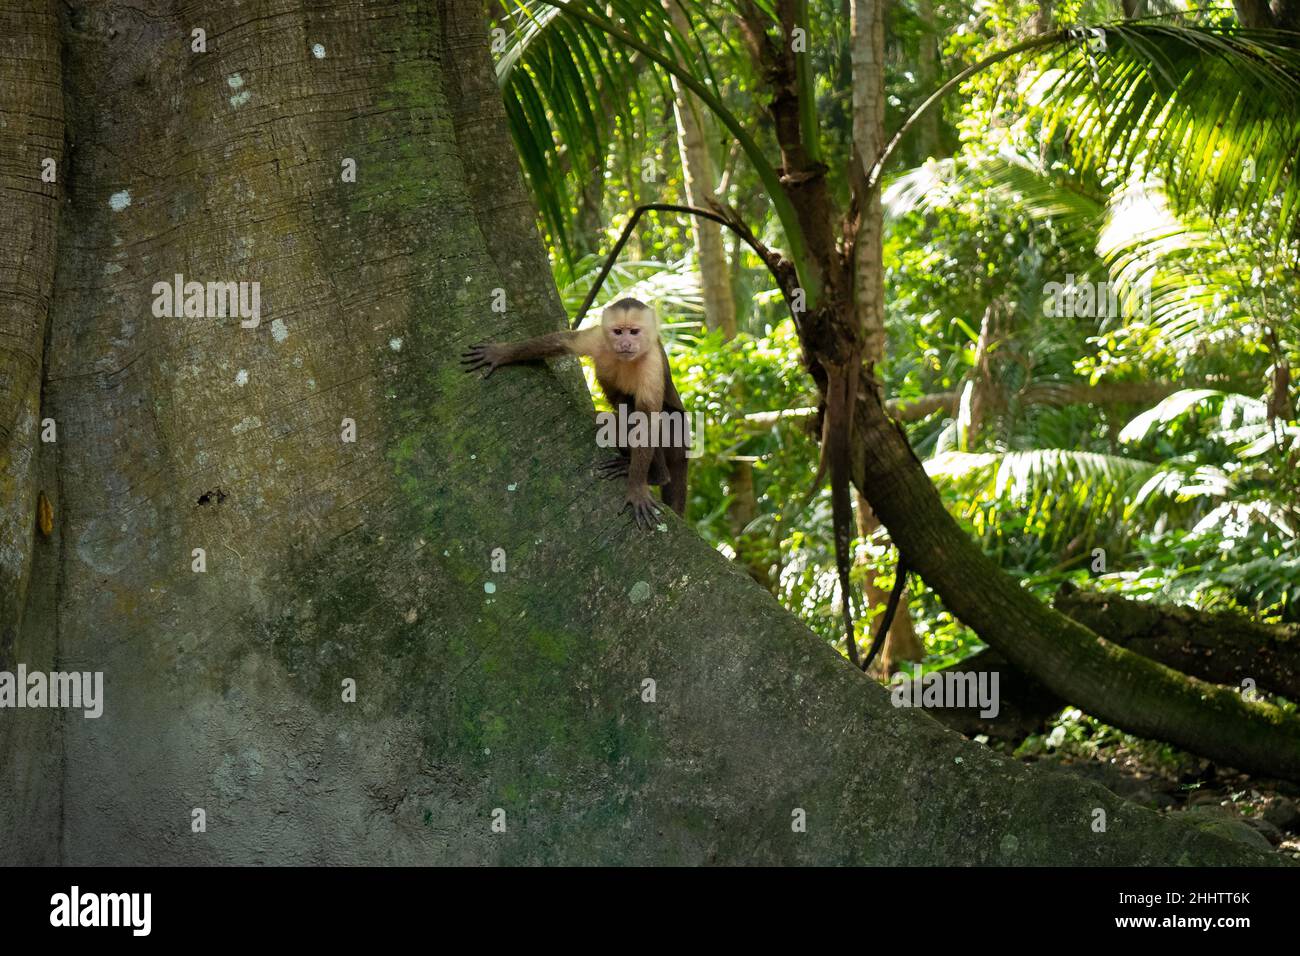 Le Capuchin panaméen à tête blanche (imitateur du Cebus), également connu sous le nom de Capuchin panaméen ou d'Amérique centrale à tête blanche, est debout dans un arbre Banque D'Images